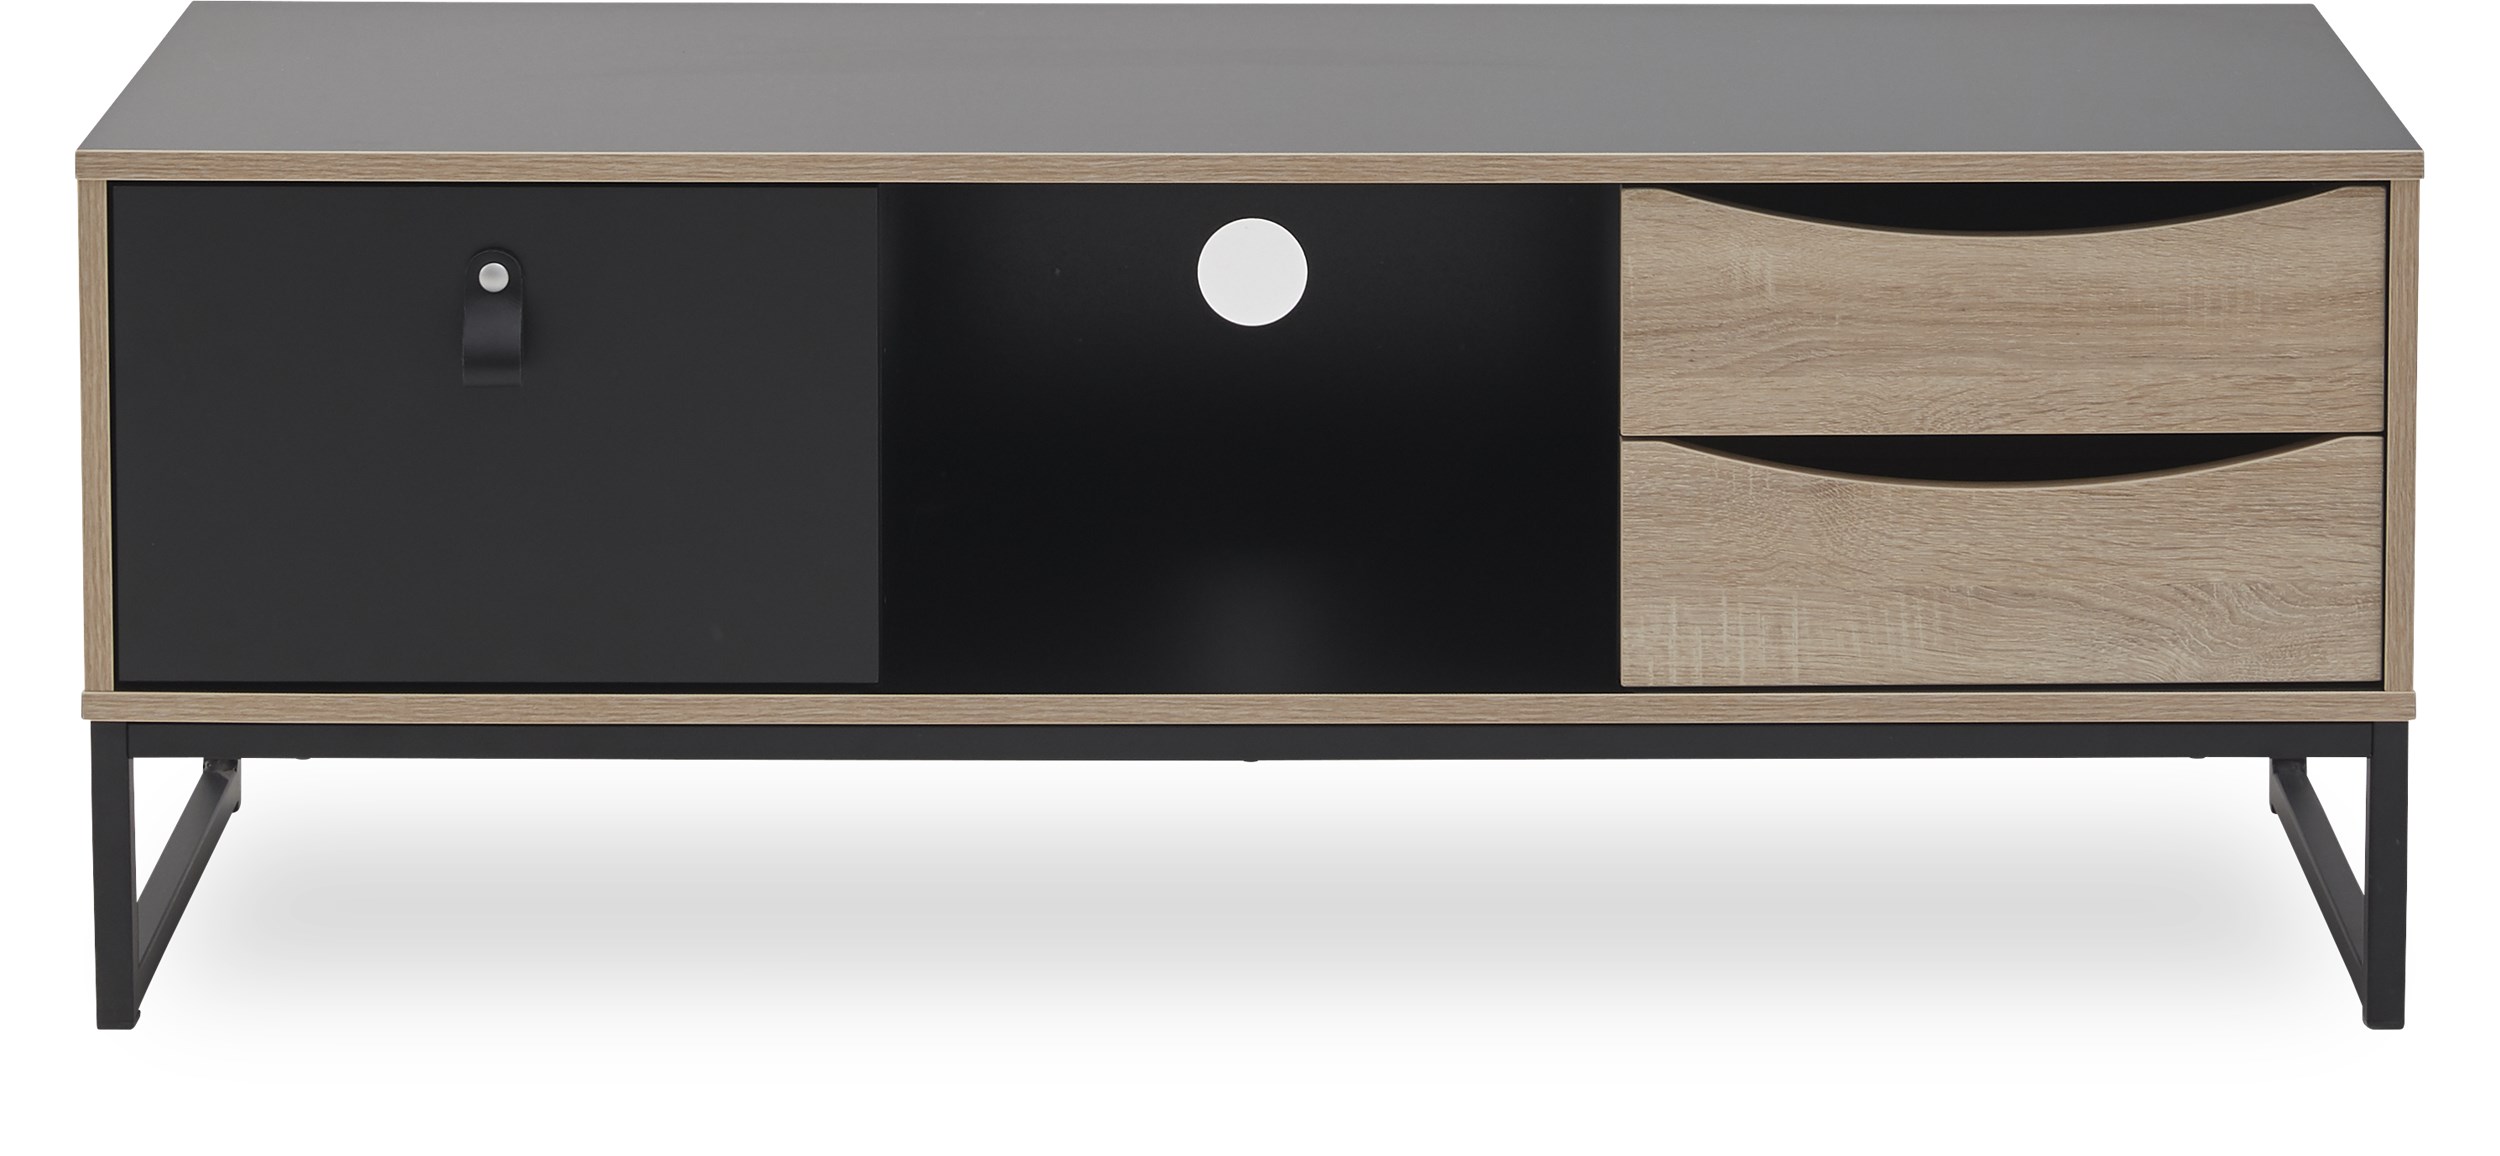 Tulino TV-möbel - Stomme i spånplatta med svart folie, Framsidor i svart- och ekstruktur folie och stomme i svartmålad metall